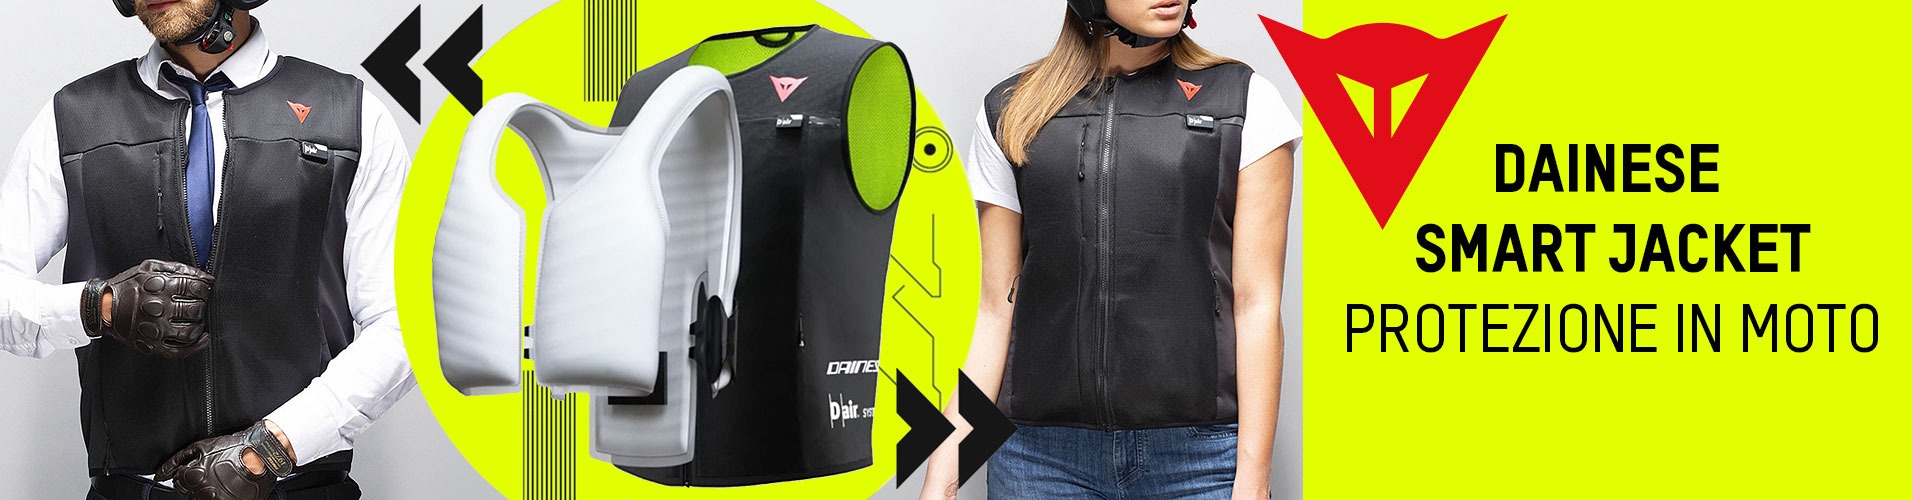 Dainese D-Air Smart Jacket motorstock ist ein Onlinehändler